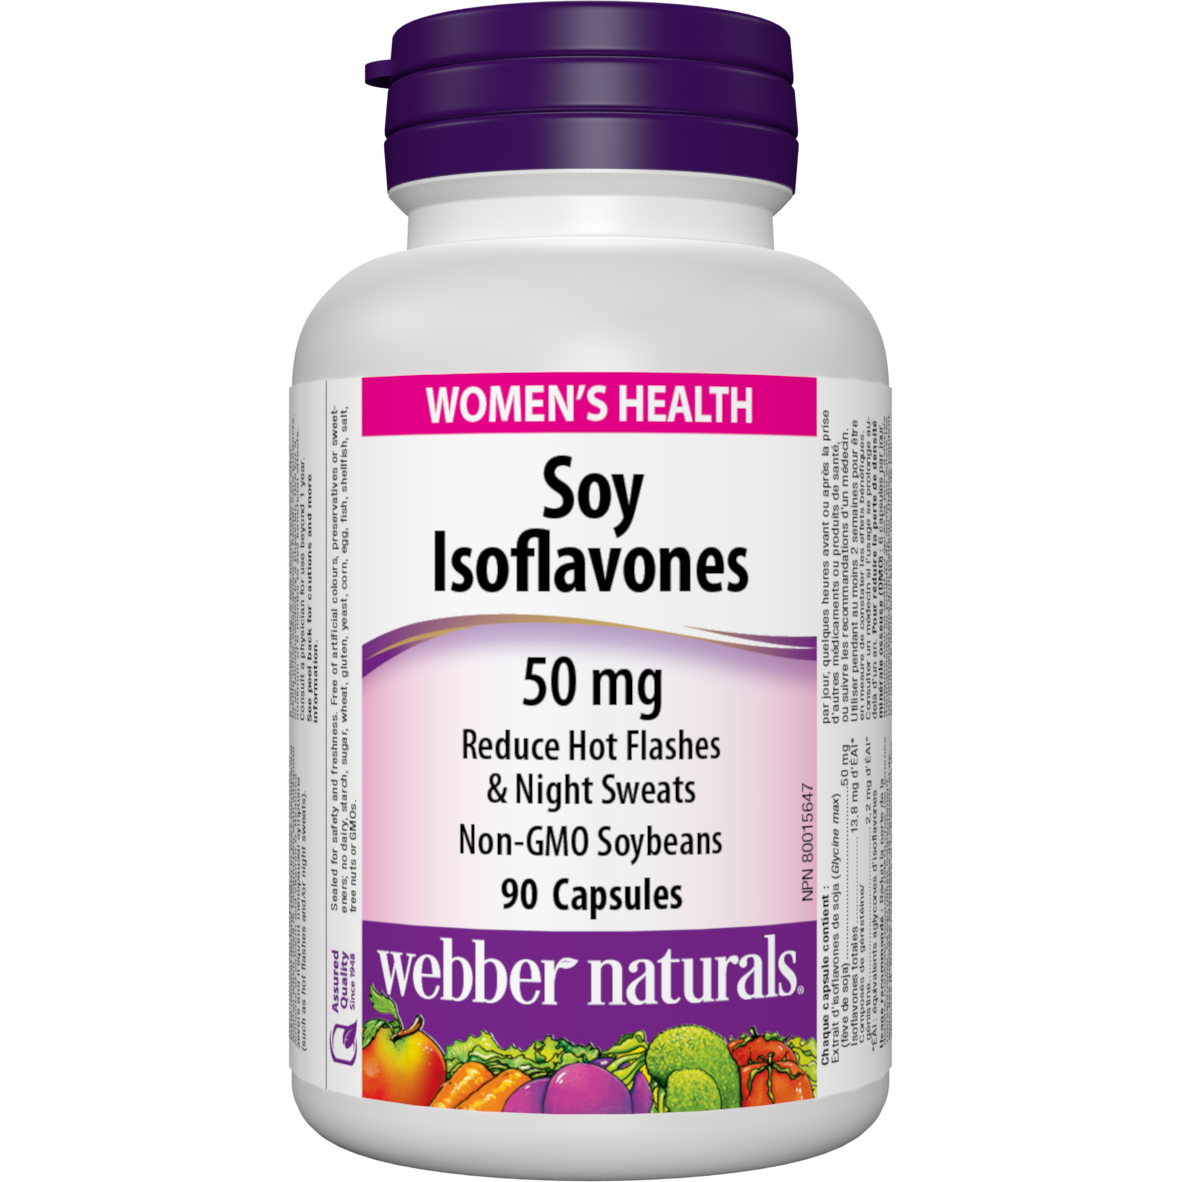 Soy Isoflavones 50 mg for Webber Naturals|v|hi-res|WN3613